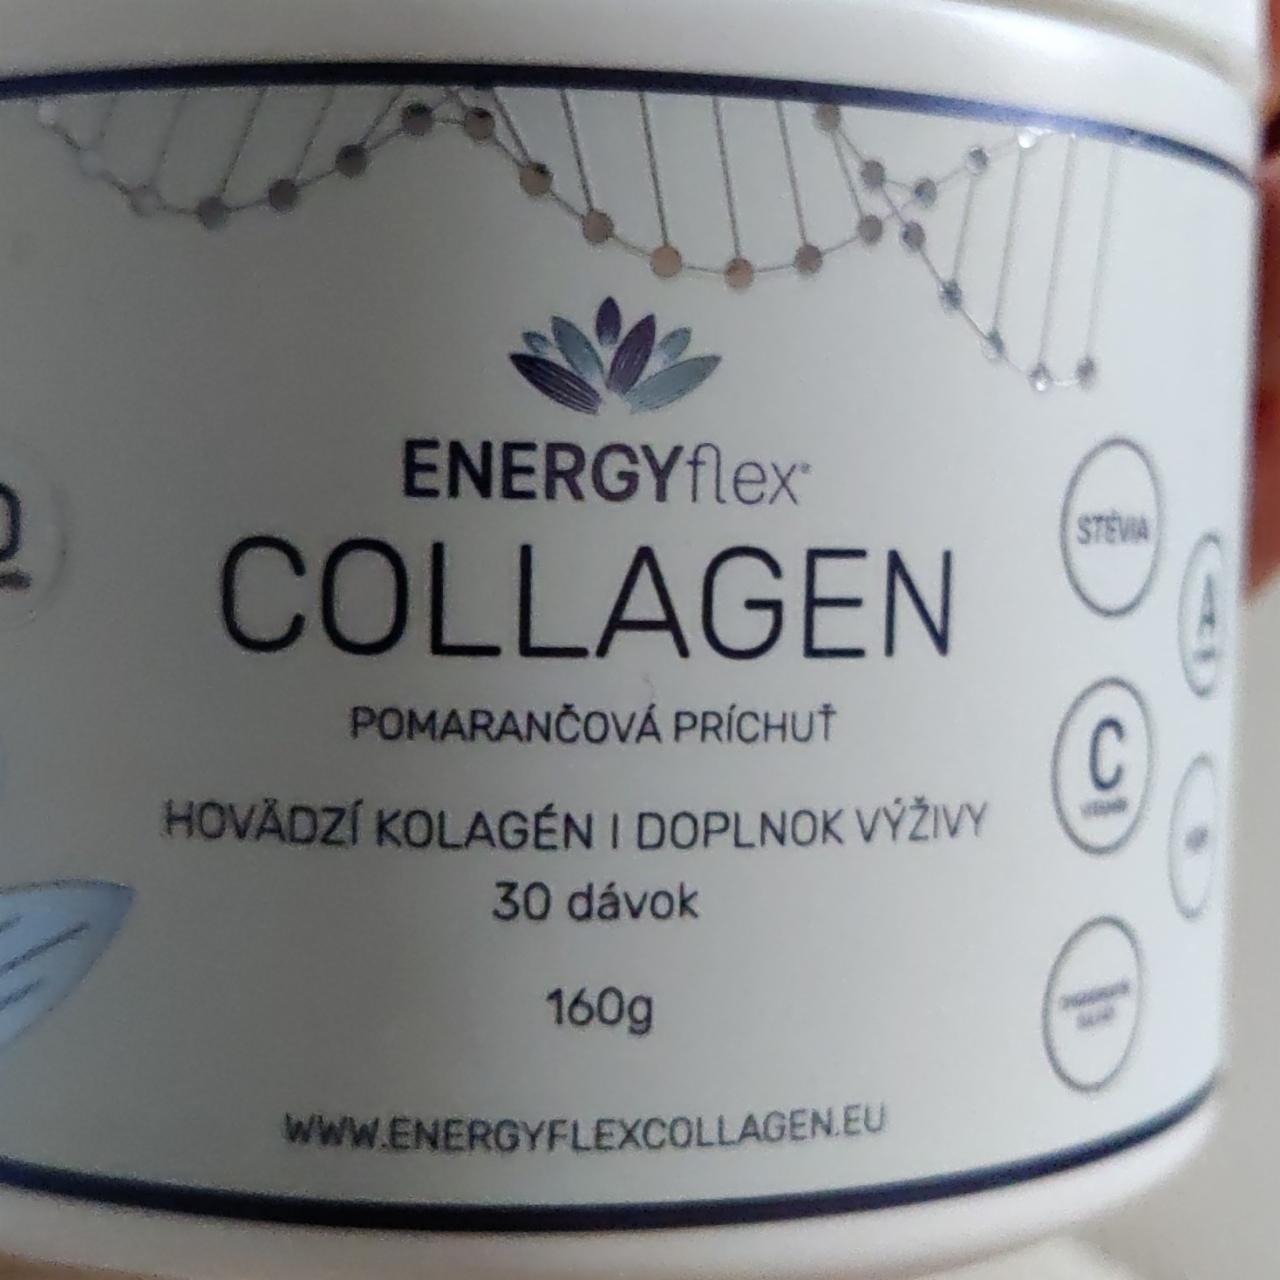 Fotografie - Collagen pomarančová príchuť Energyflex